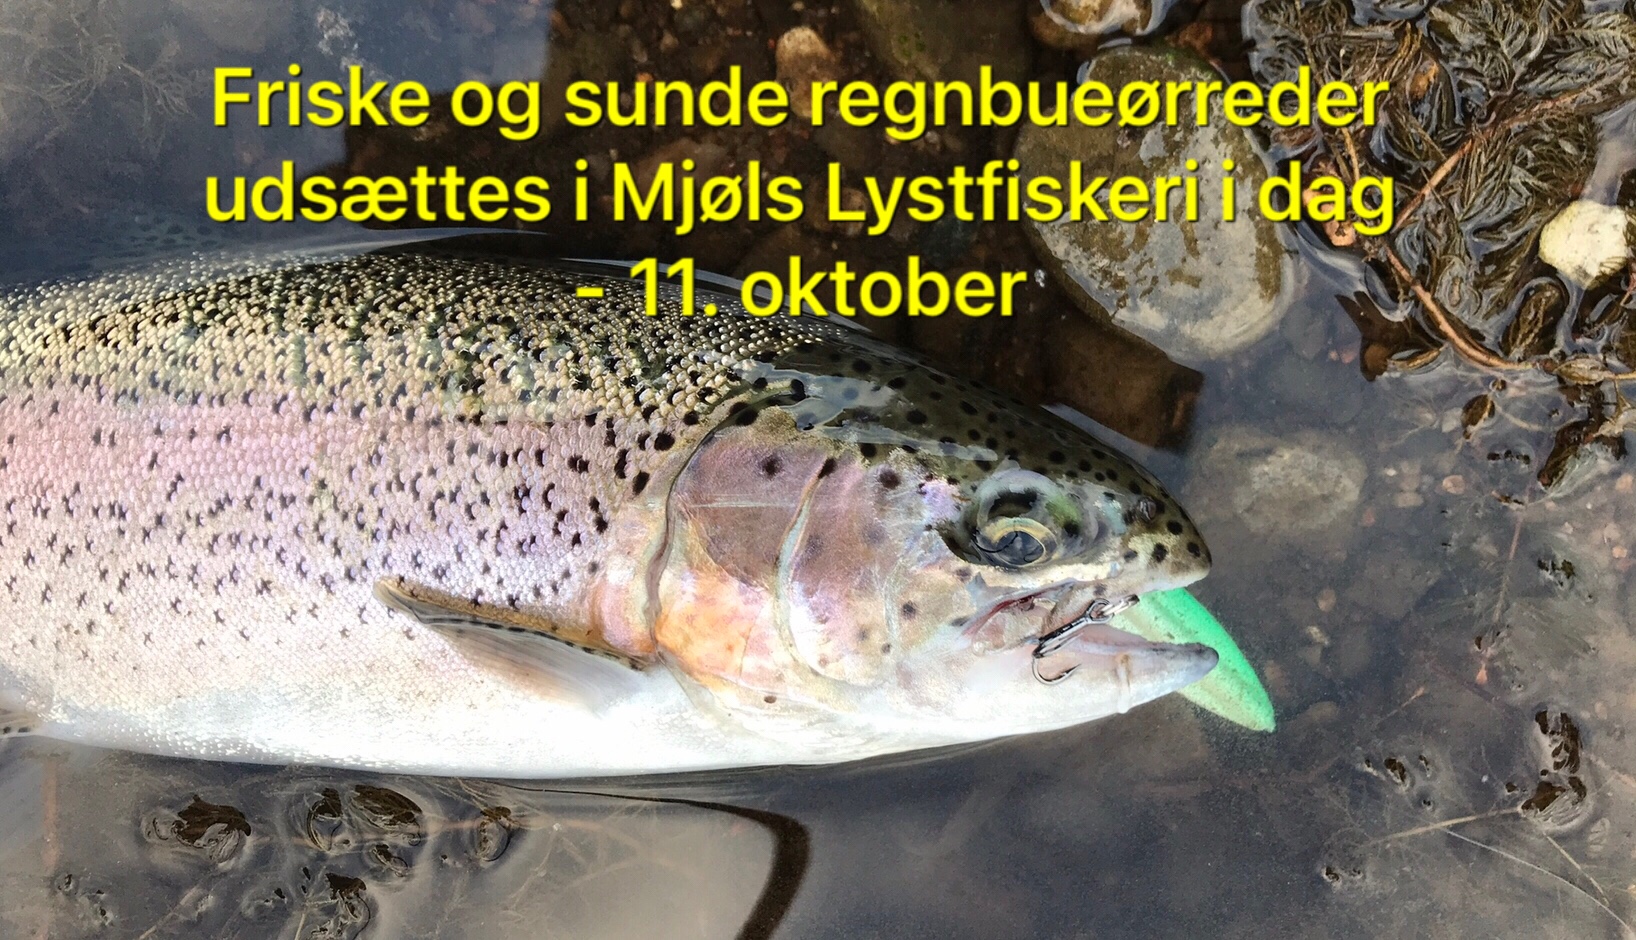 SE VIDEO – MJØLS Lystfiskeri: Friske og sunde regnbueørreder i SØ1 i dag